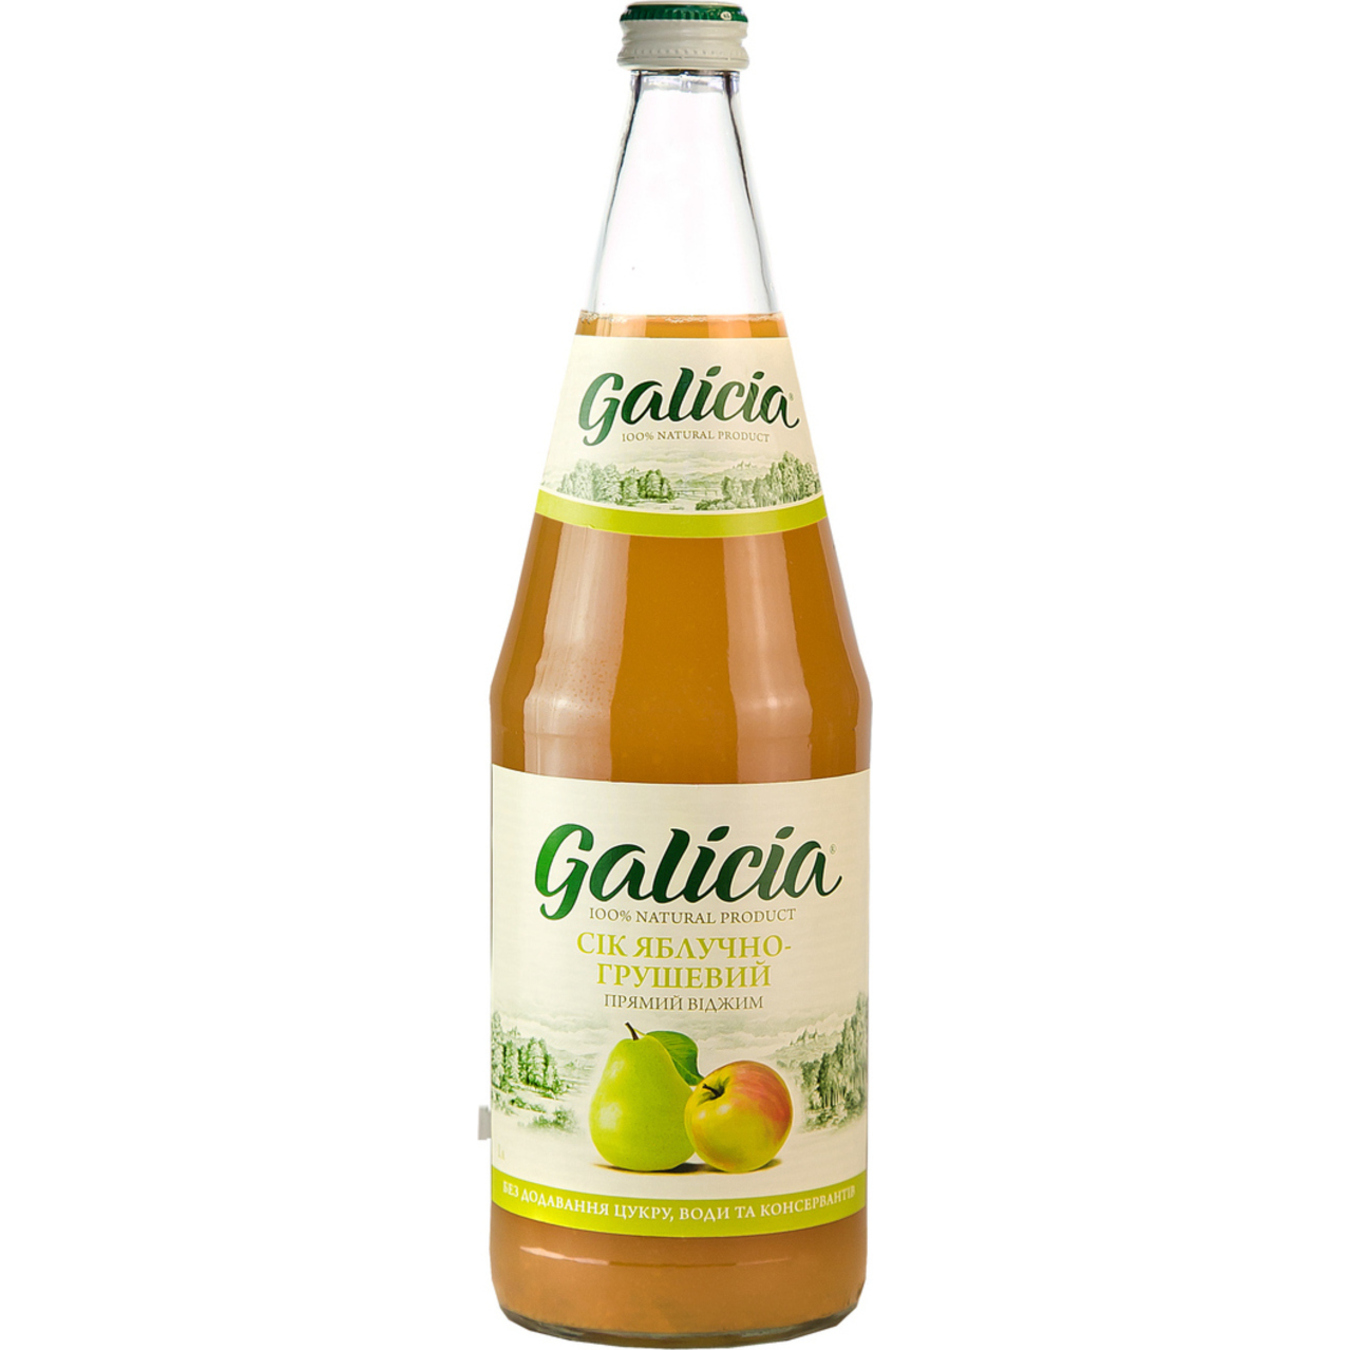 Galicia Apple-Pear Juice Glass 1l